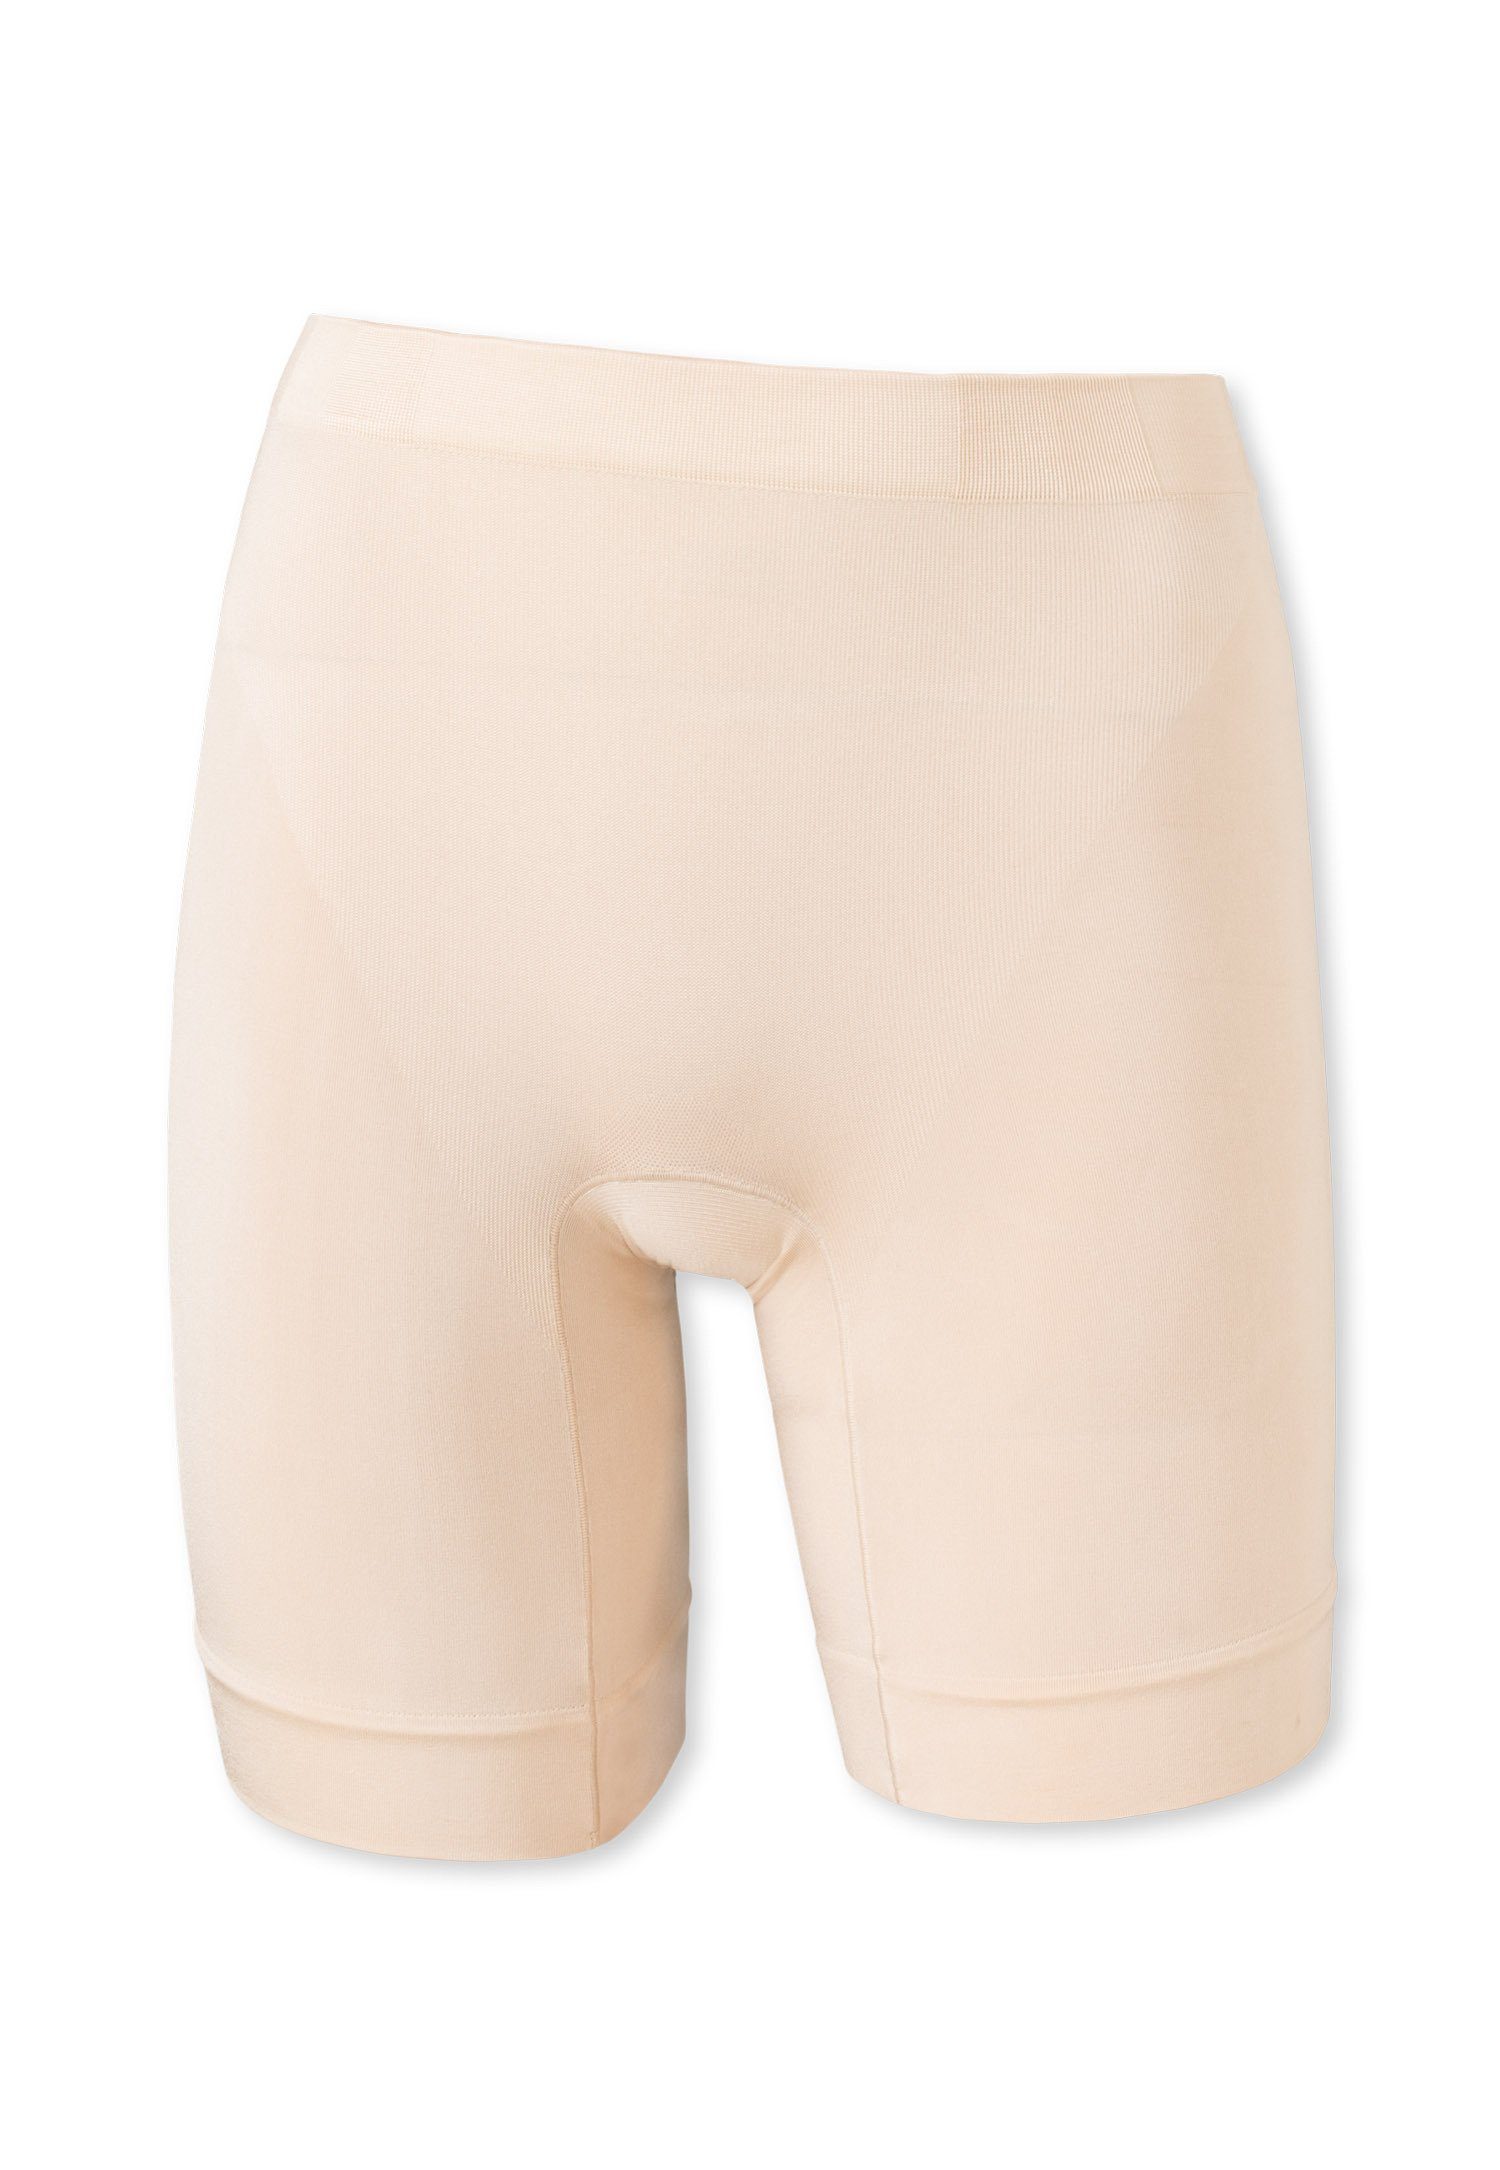 Schiesser Panty Damen Longshorts - Shapewear, Pants, Unterhose Beige